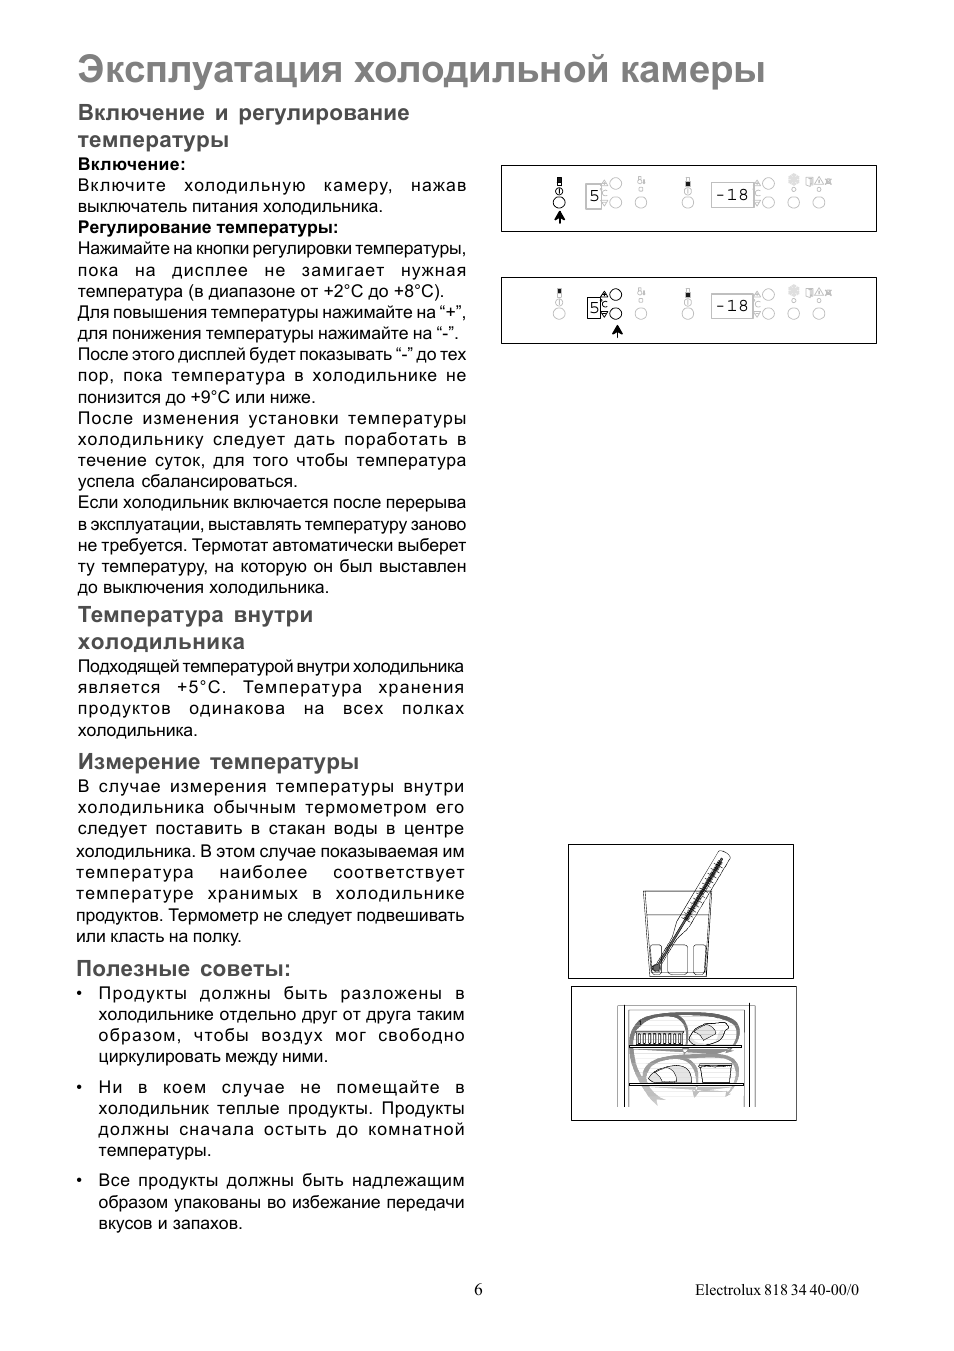 Инструкция по эксплуатации холодильной камеры